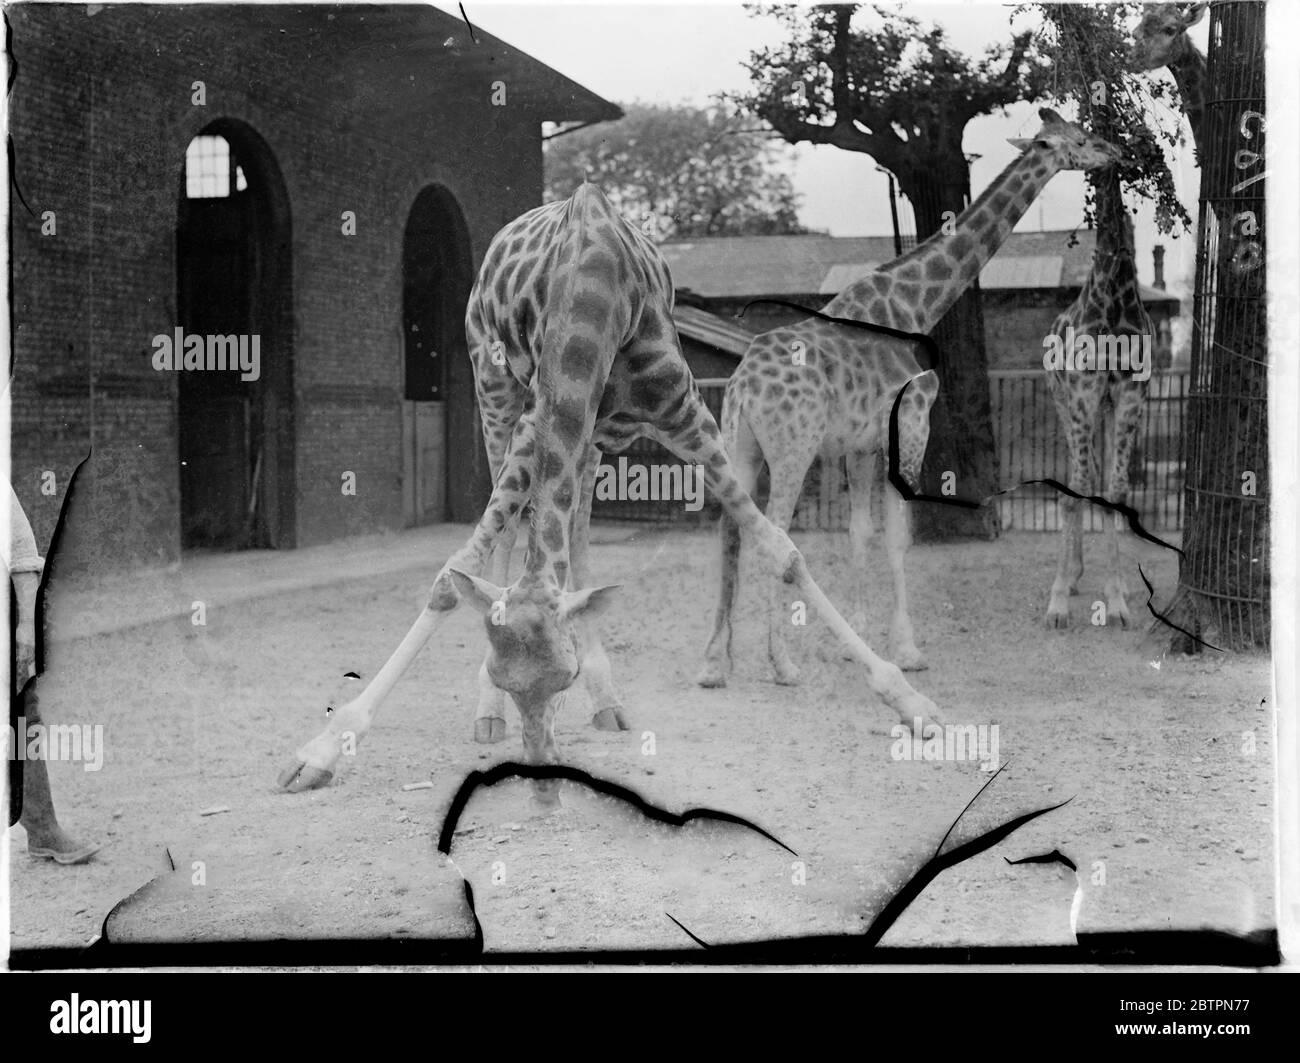 Entwurf führt die 'Splits' aus. Mit seinen unbäntigen Beinen, die weit gestreckt sind, bildet einer der Giraffen im London Zoo ein perfektes Dreieck, da er seinen langen Hals senkt, um vom Boden zu essen. Diese ungewöhnliche Haltung wird immer von der Mile Giraffe übernommen. Begleiter im Hintergrund suchen eine natürlichere Methode der Fütterung. Juni 1937 Stockfoto